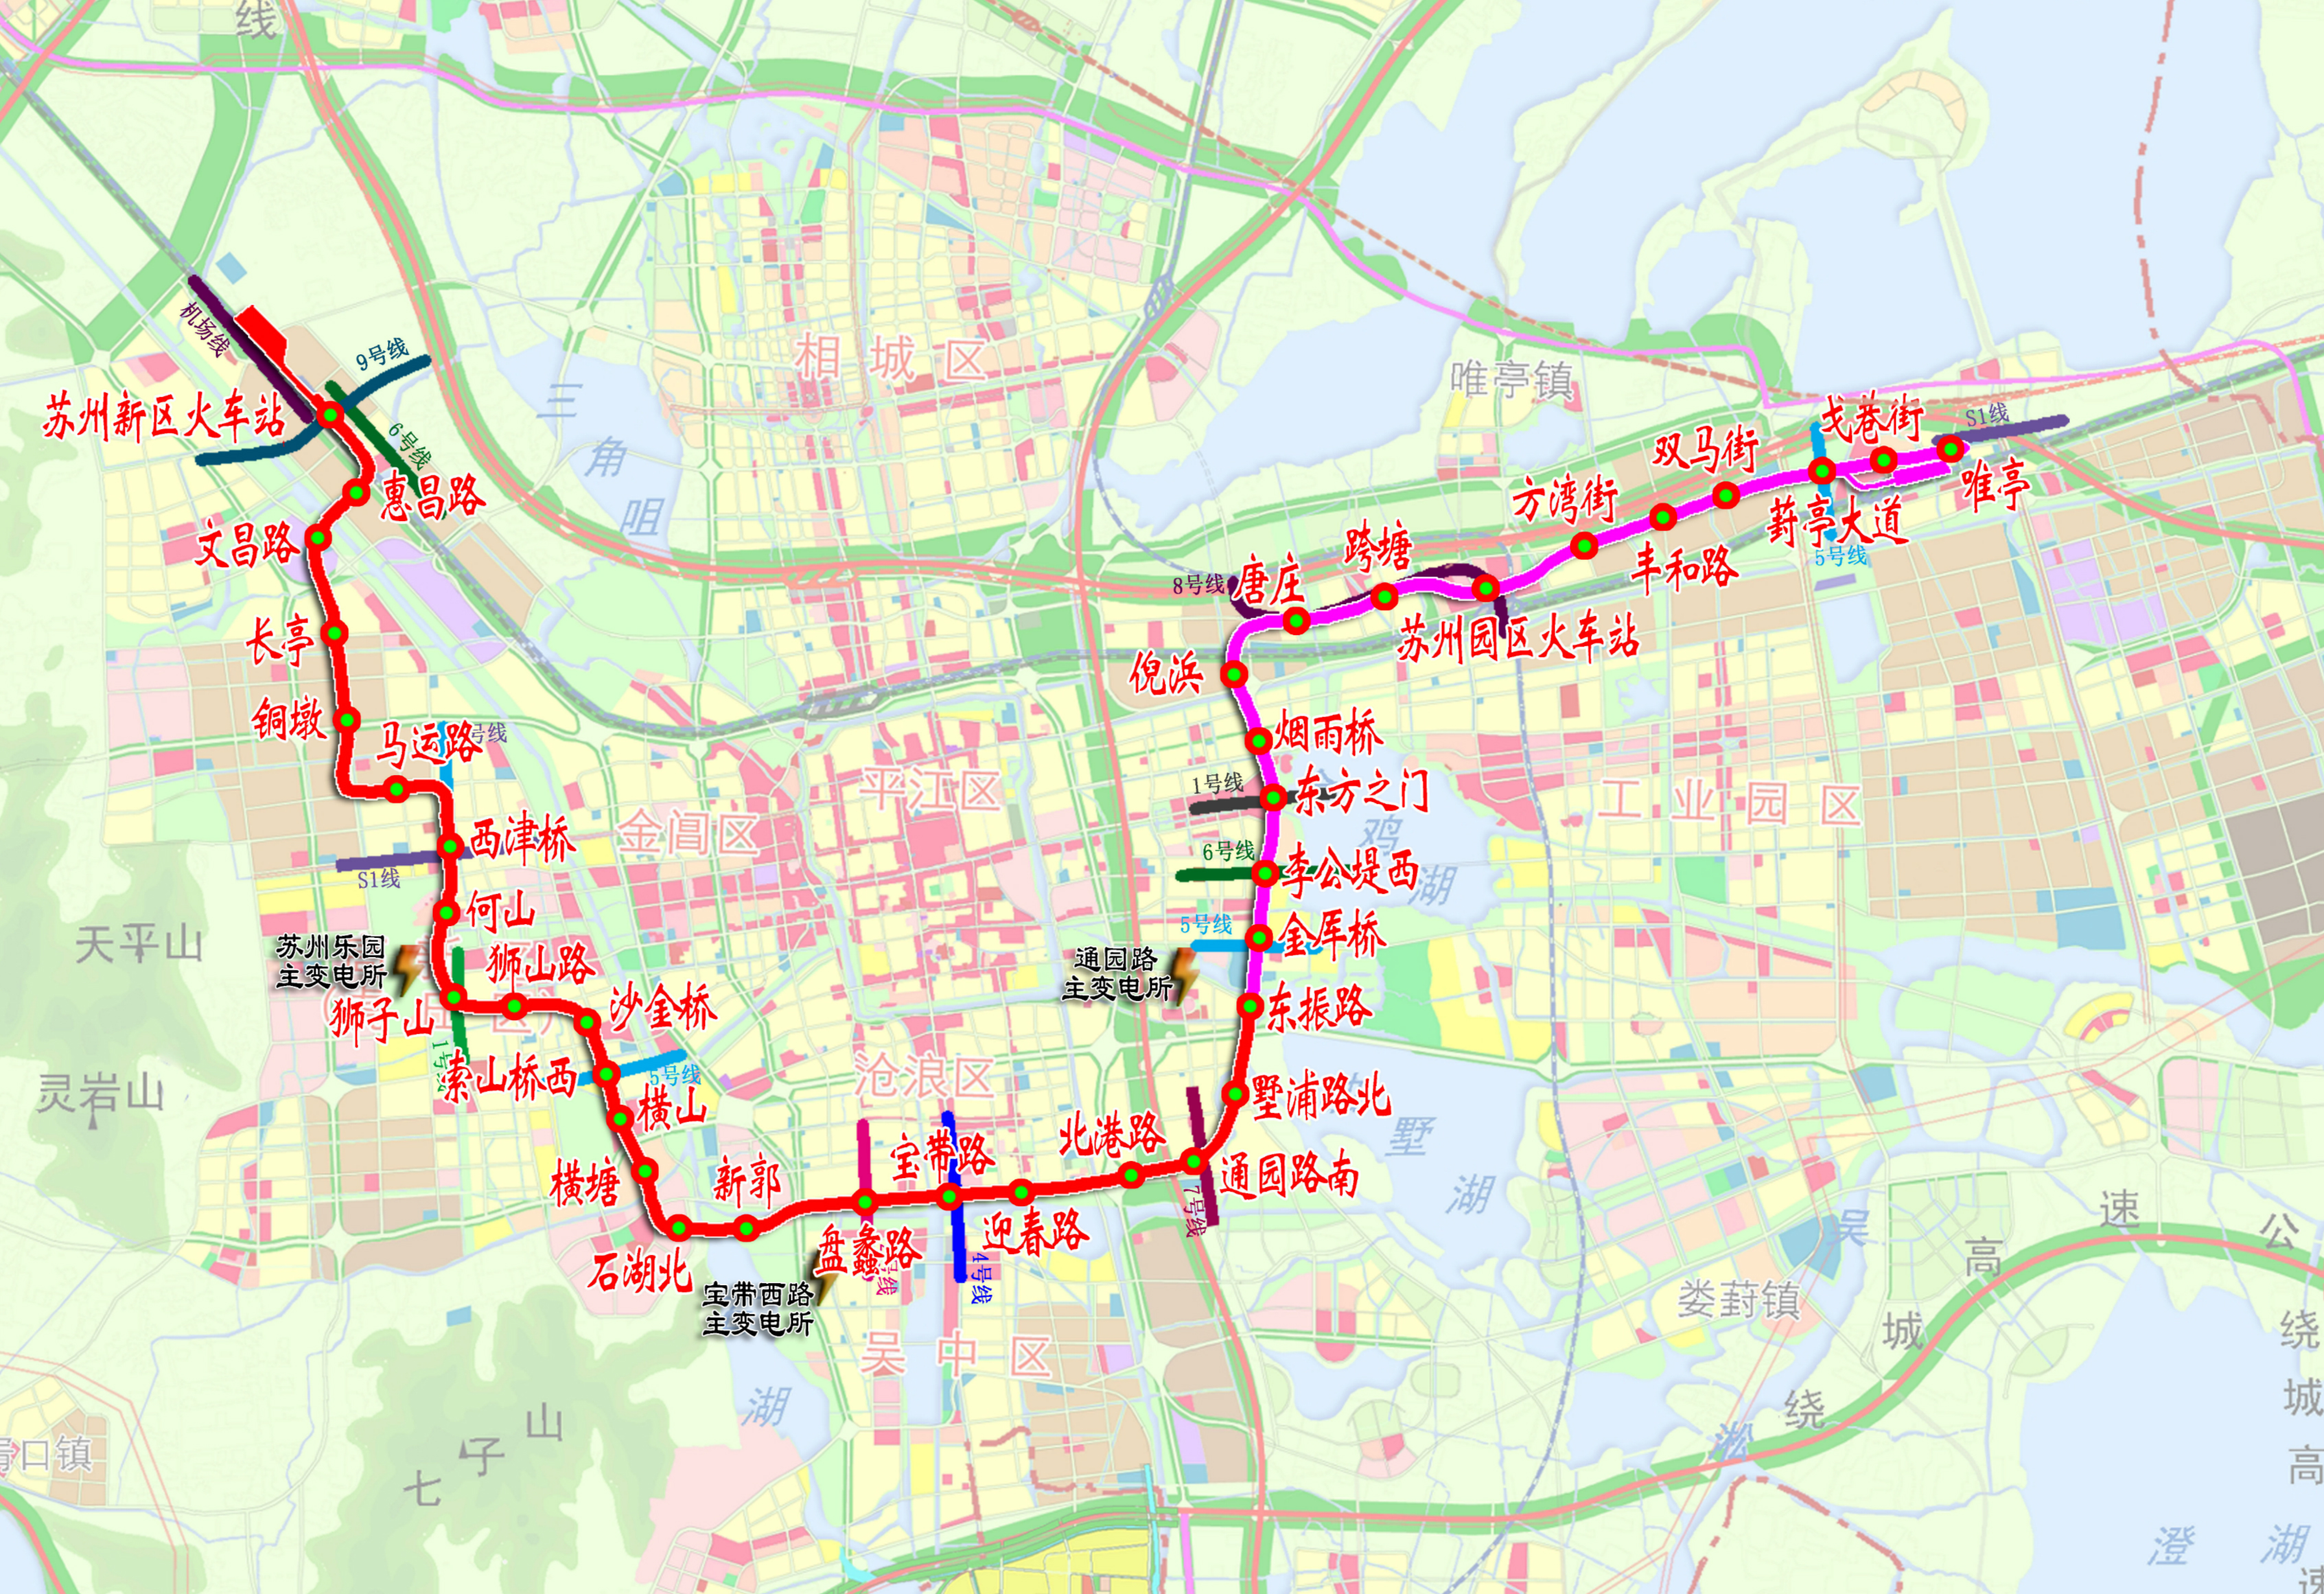 蘇州軌道交通3號線線路圖